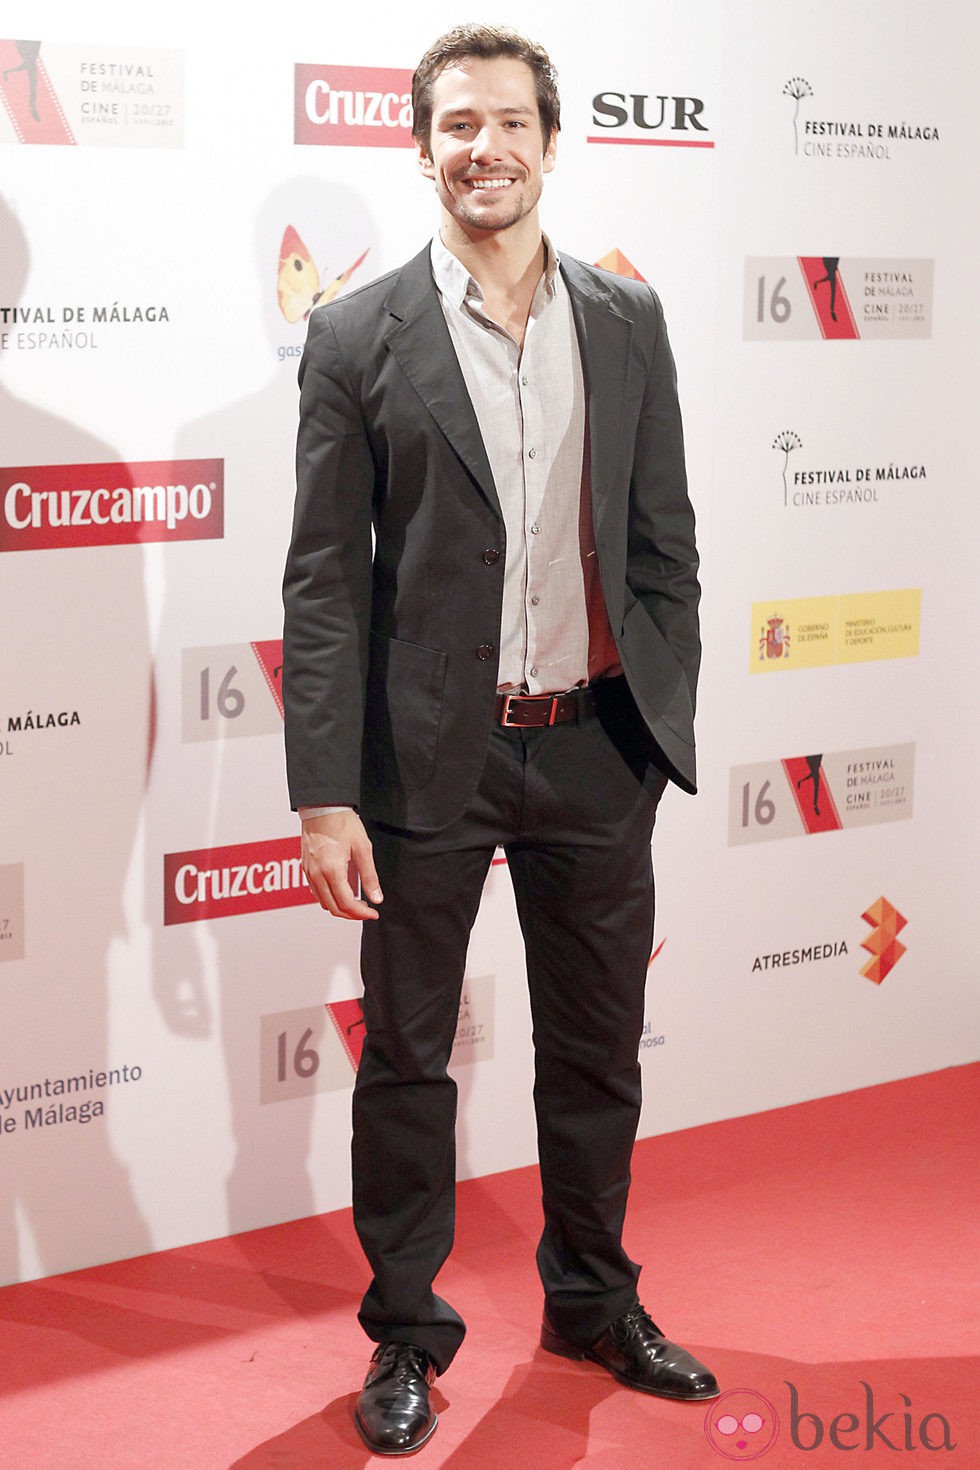 Alejandro Albarracín en la presentación del Festival de Málaga 2013